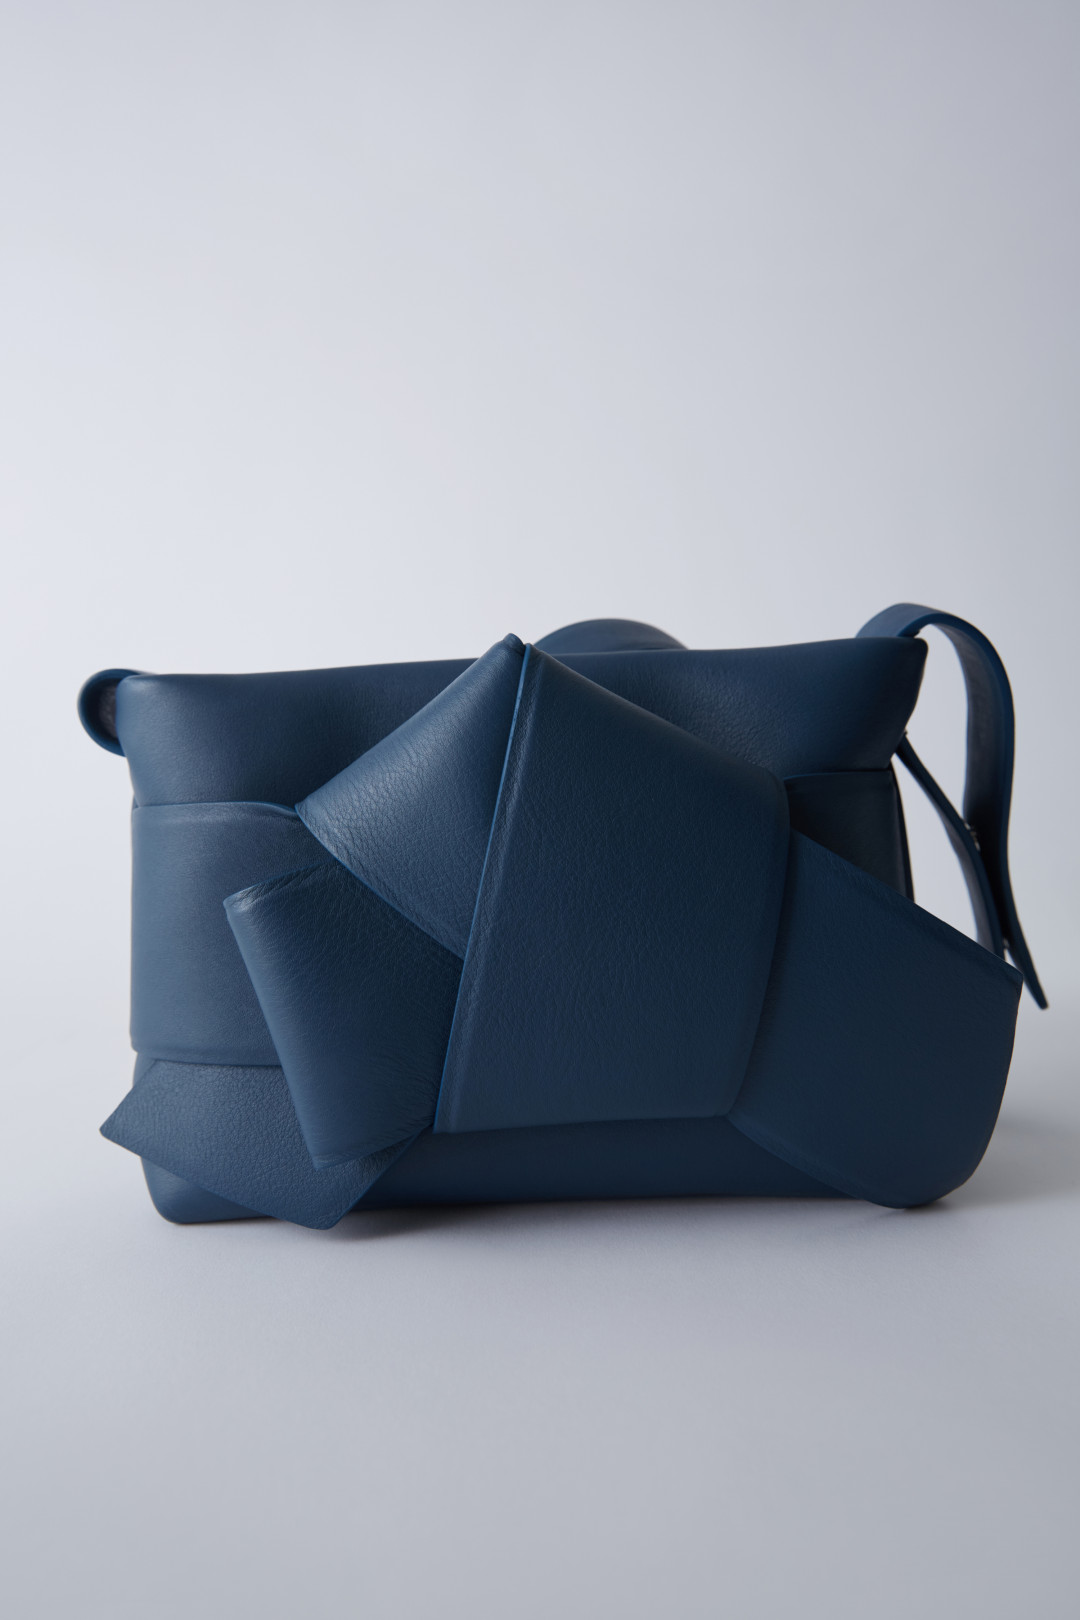 アクネ ストゥディオズのアイコニックバッグ「Musubi Bag」にスエード素材と新色が登場! | PHOTO(2/80) | FASHION